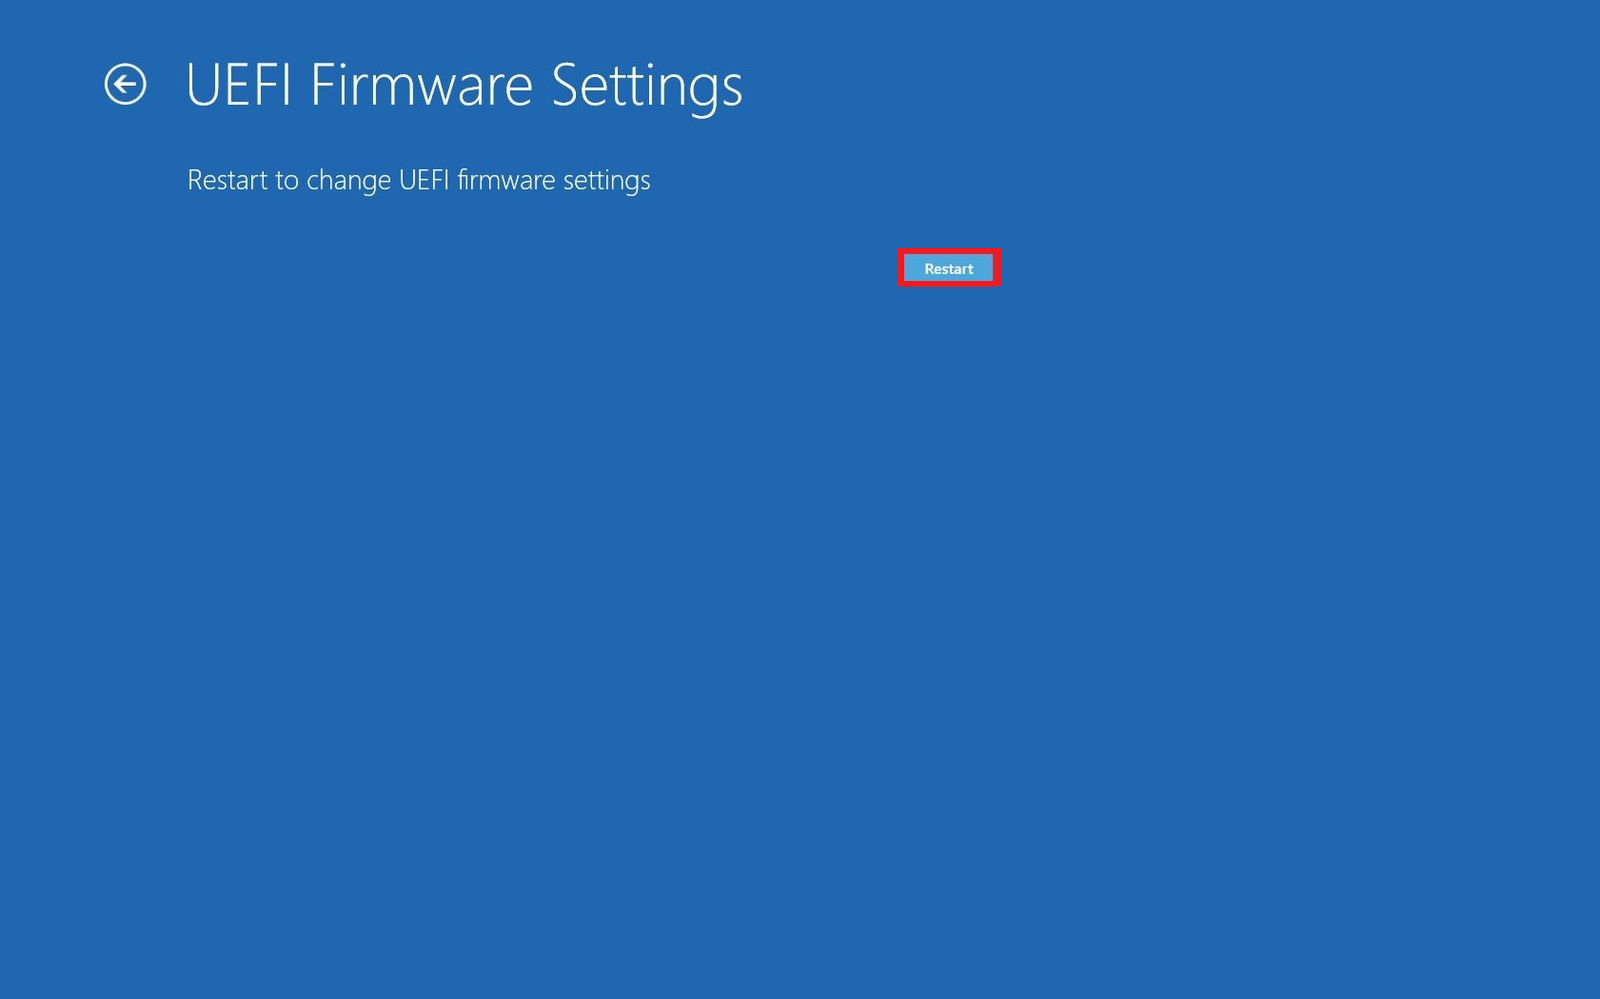 Restart UEFI Firmware Settings